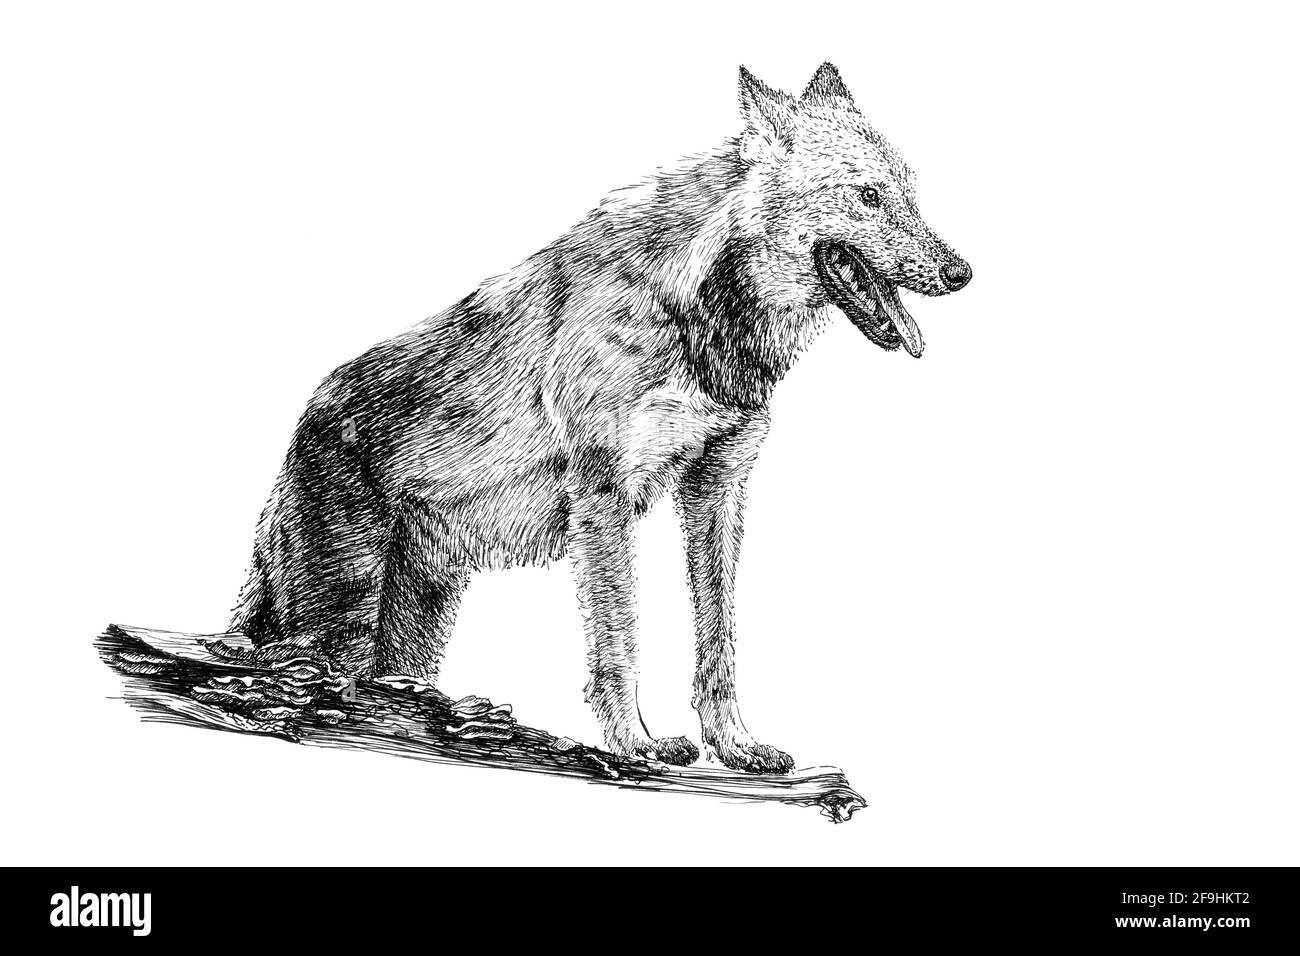 Loup dessiné à la main, croquis illustration monochrome graphique sur fond blanc (originaux, pas de traces) Banque D'Images